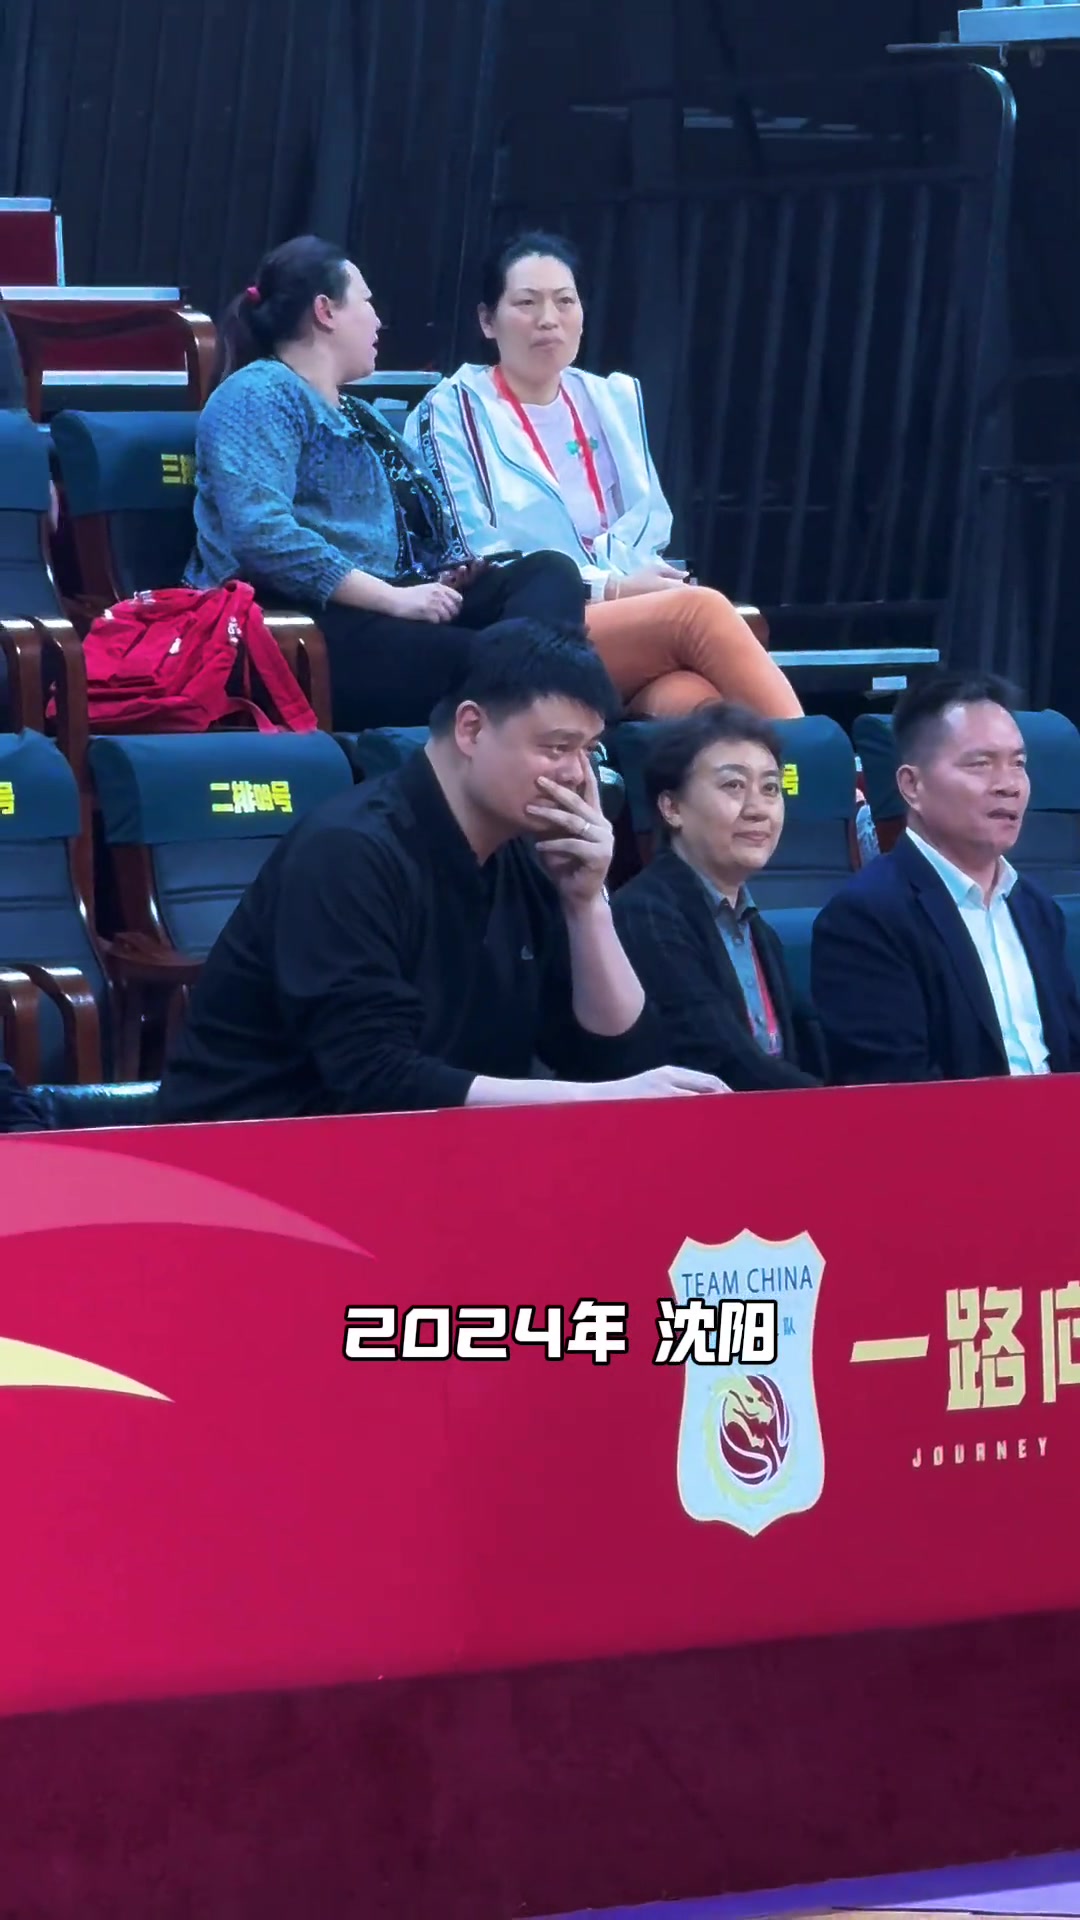 姚明和劳伦-杰克逊北京奥运后16年再度同框